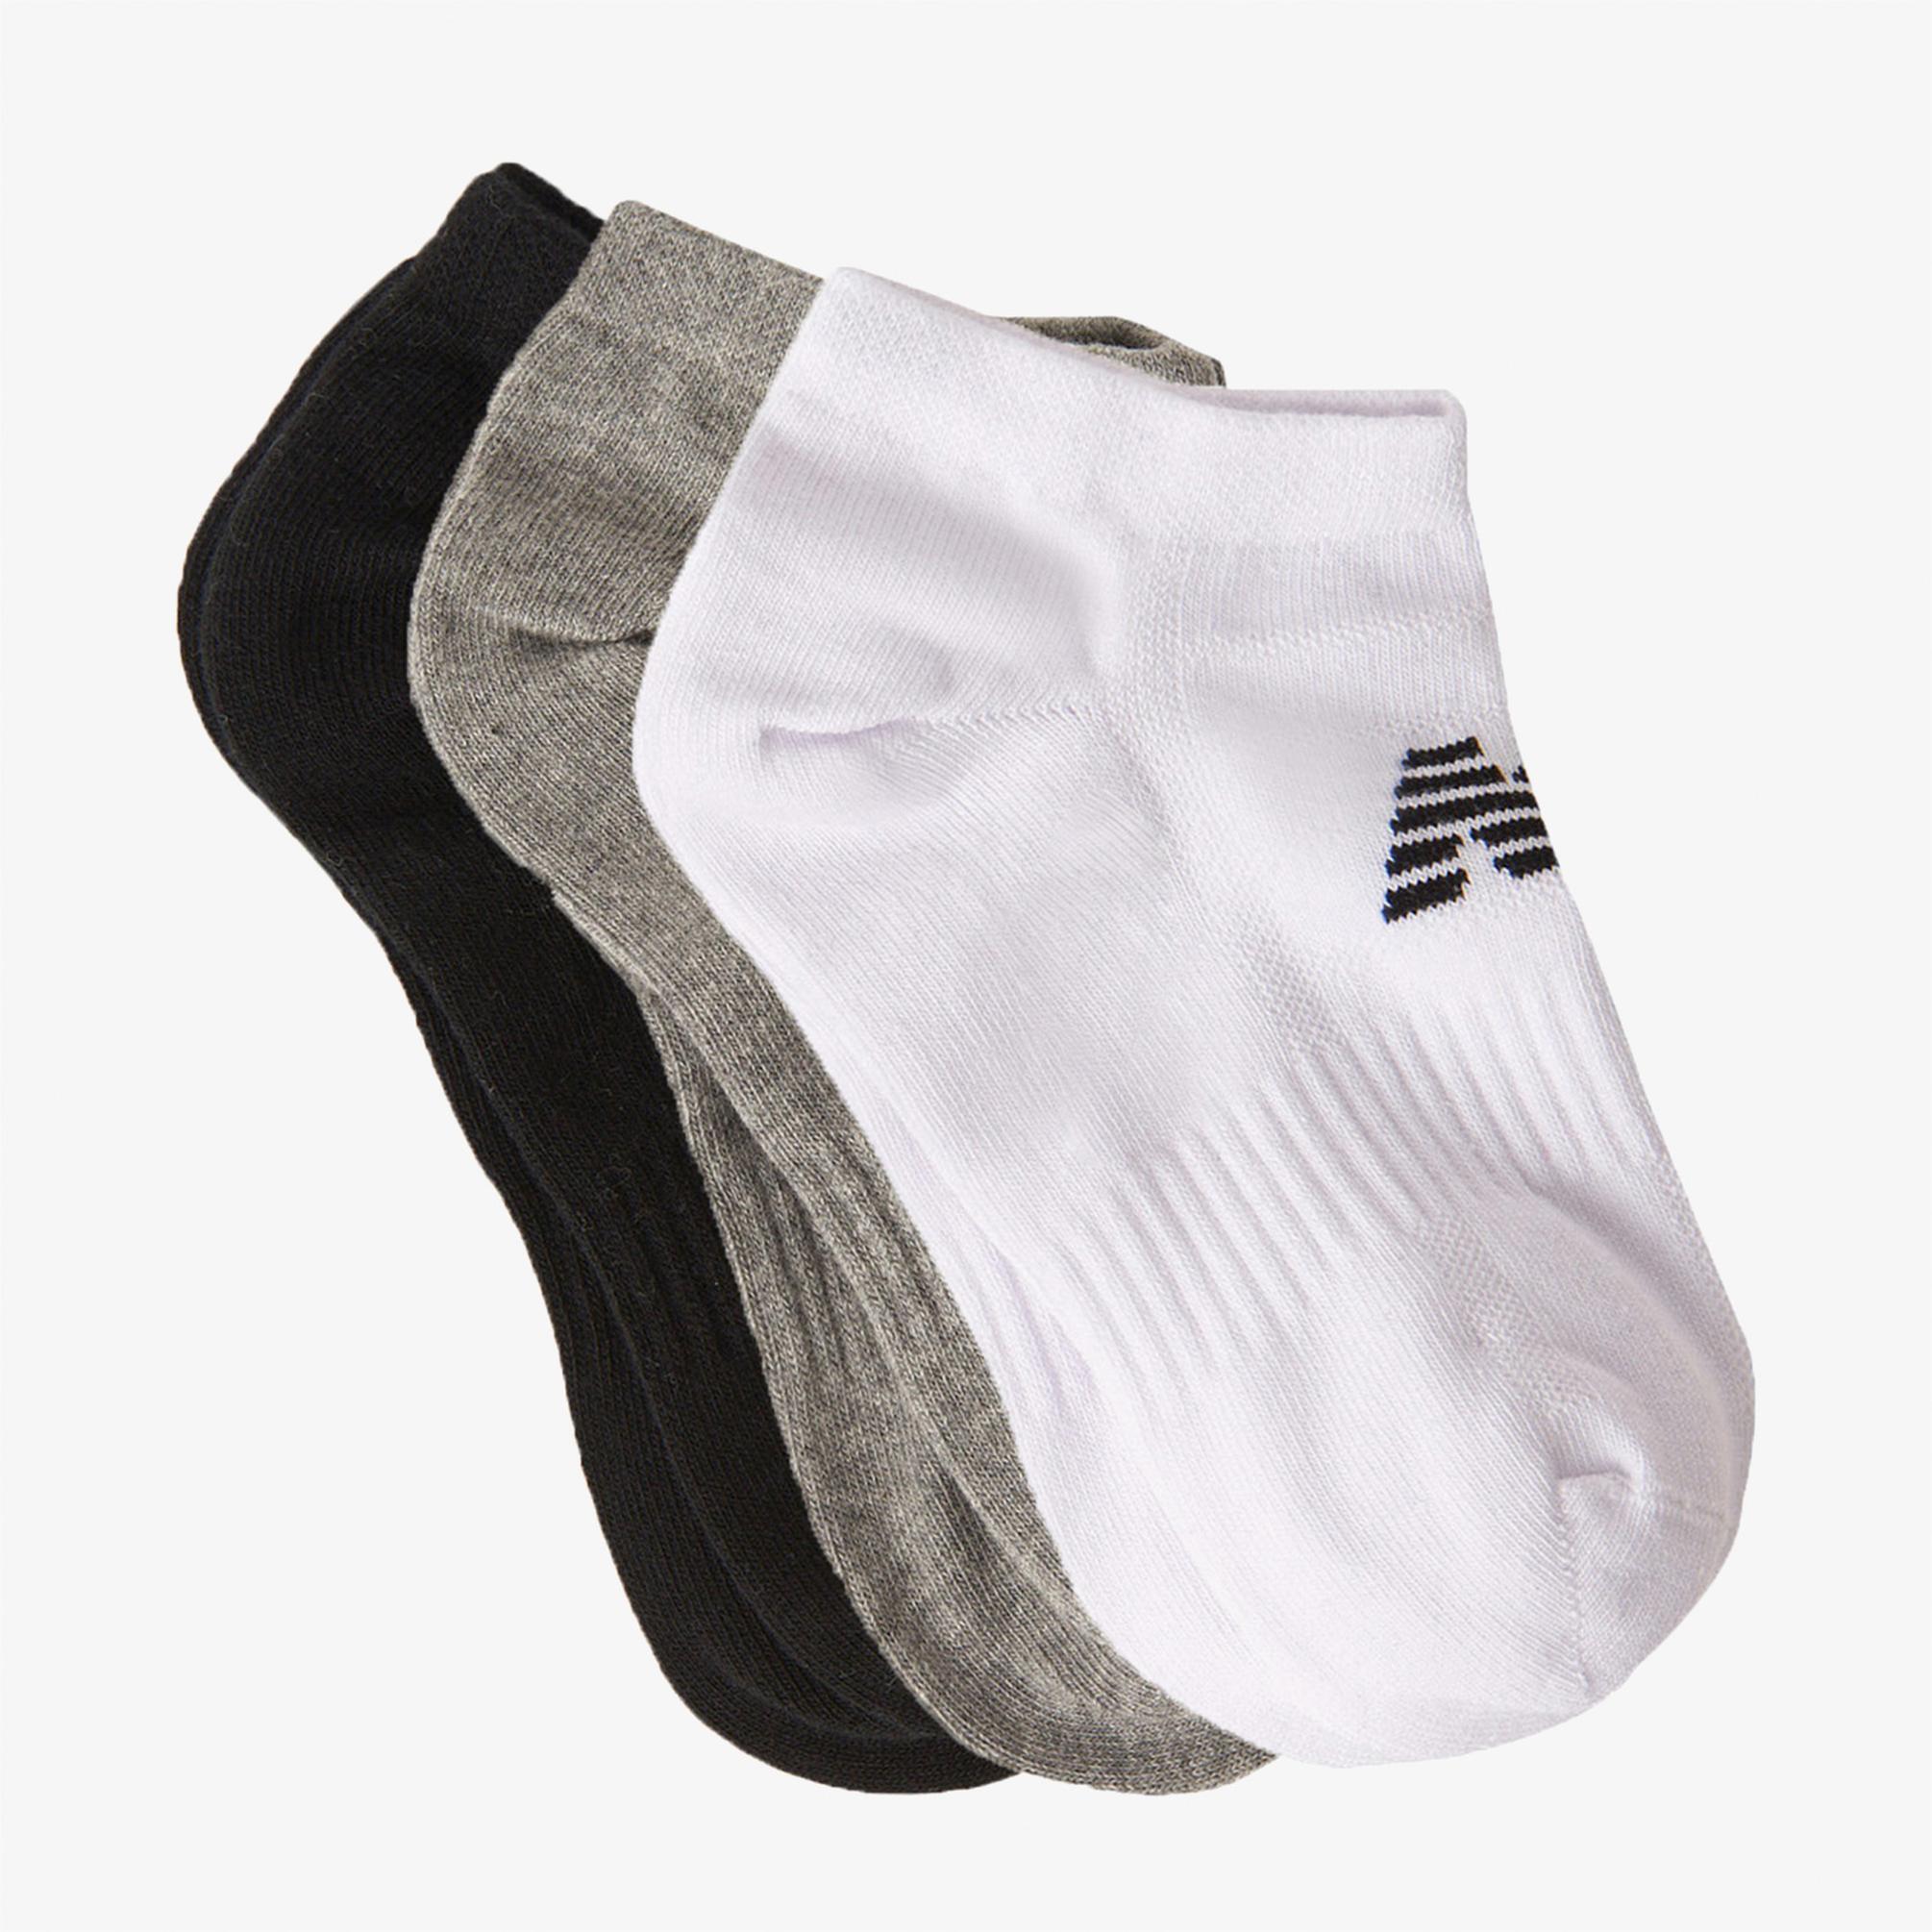  New Balance Lifestyle 3'lü Unisex Siyah/Gri/Beyaz Çorap